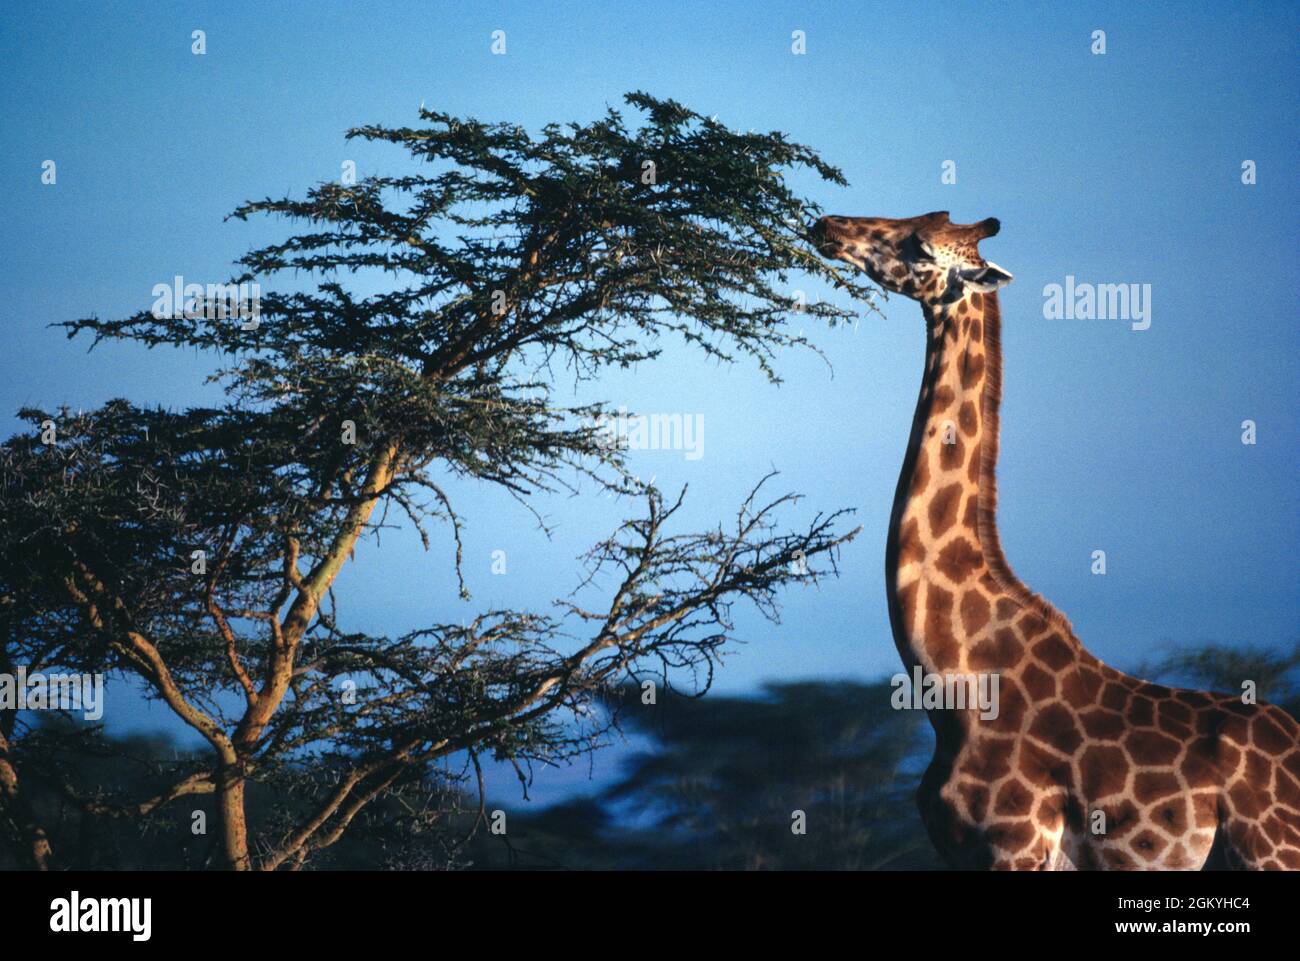 Afrique. Kenya. Parc national du lac Nakuru. Girafe atteignant la végétation, d'autres animaux ne peuvent pas y accéder. Banque D'Images